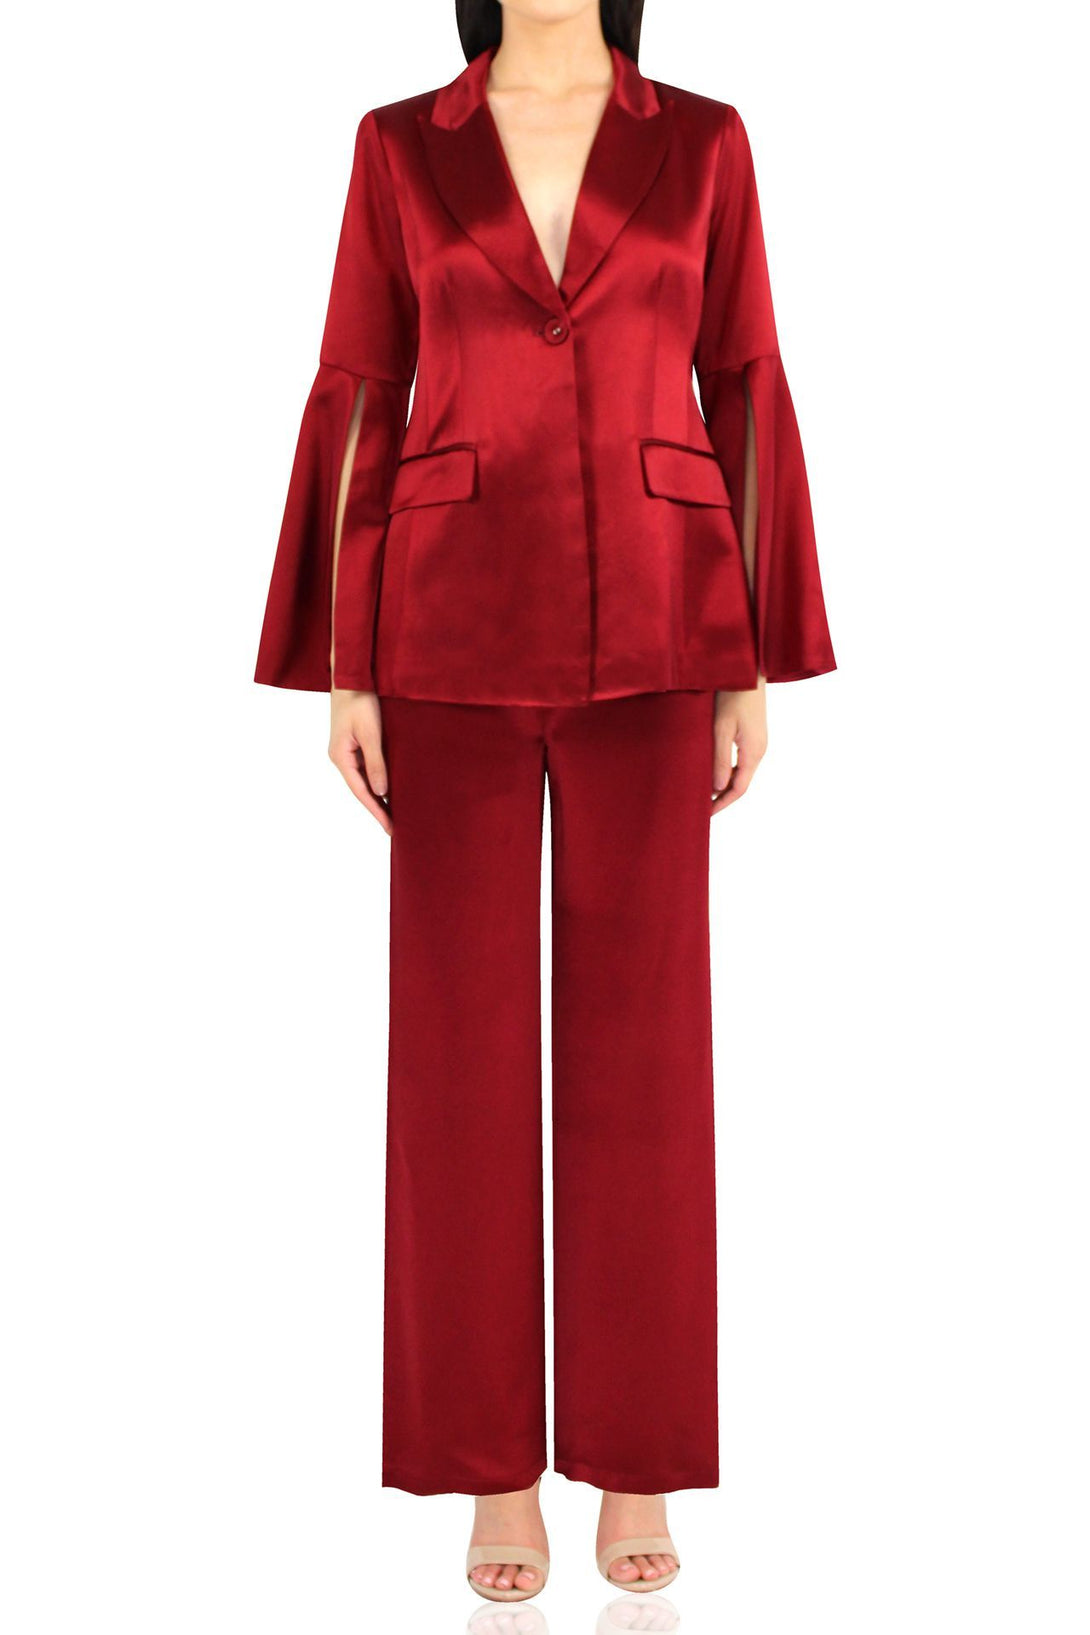 Kyle-Women-Designer-Matching-Red-Suit